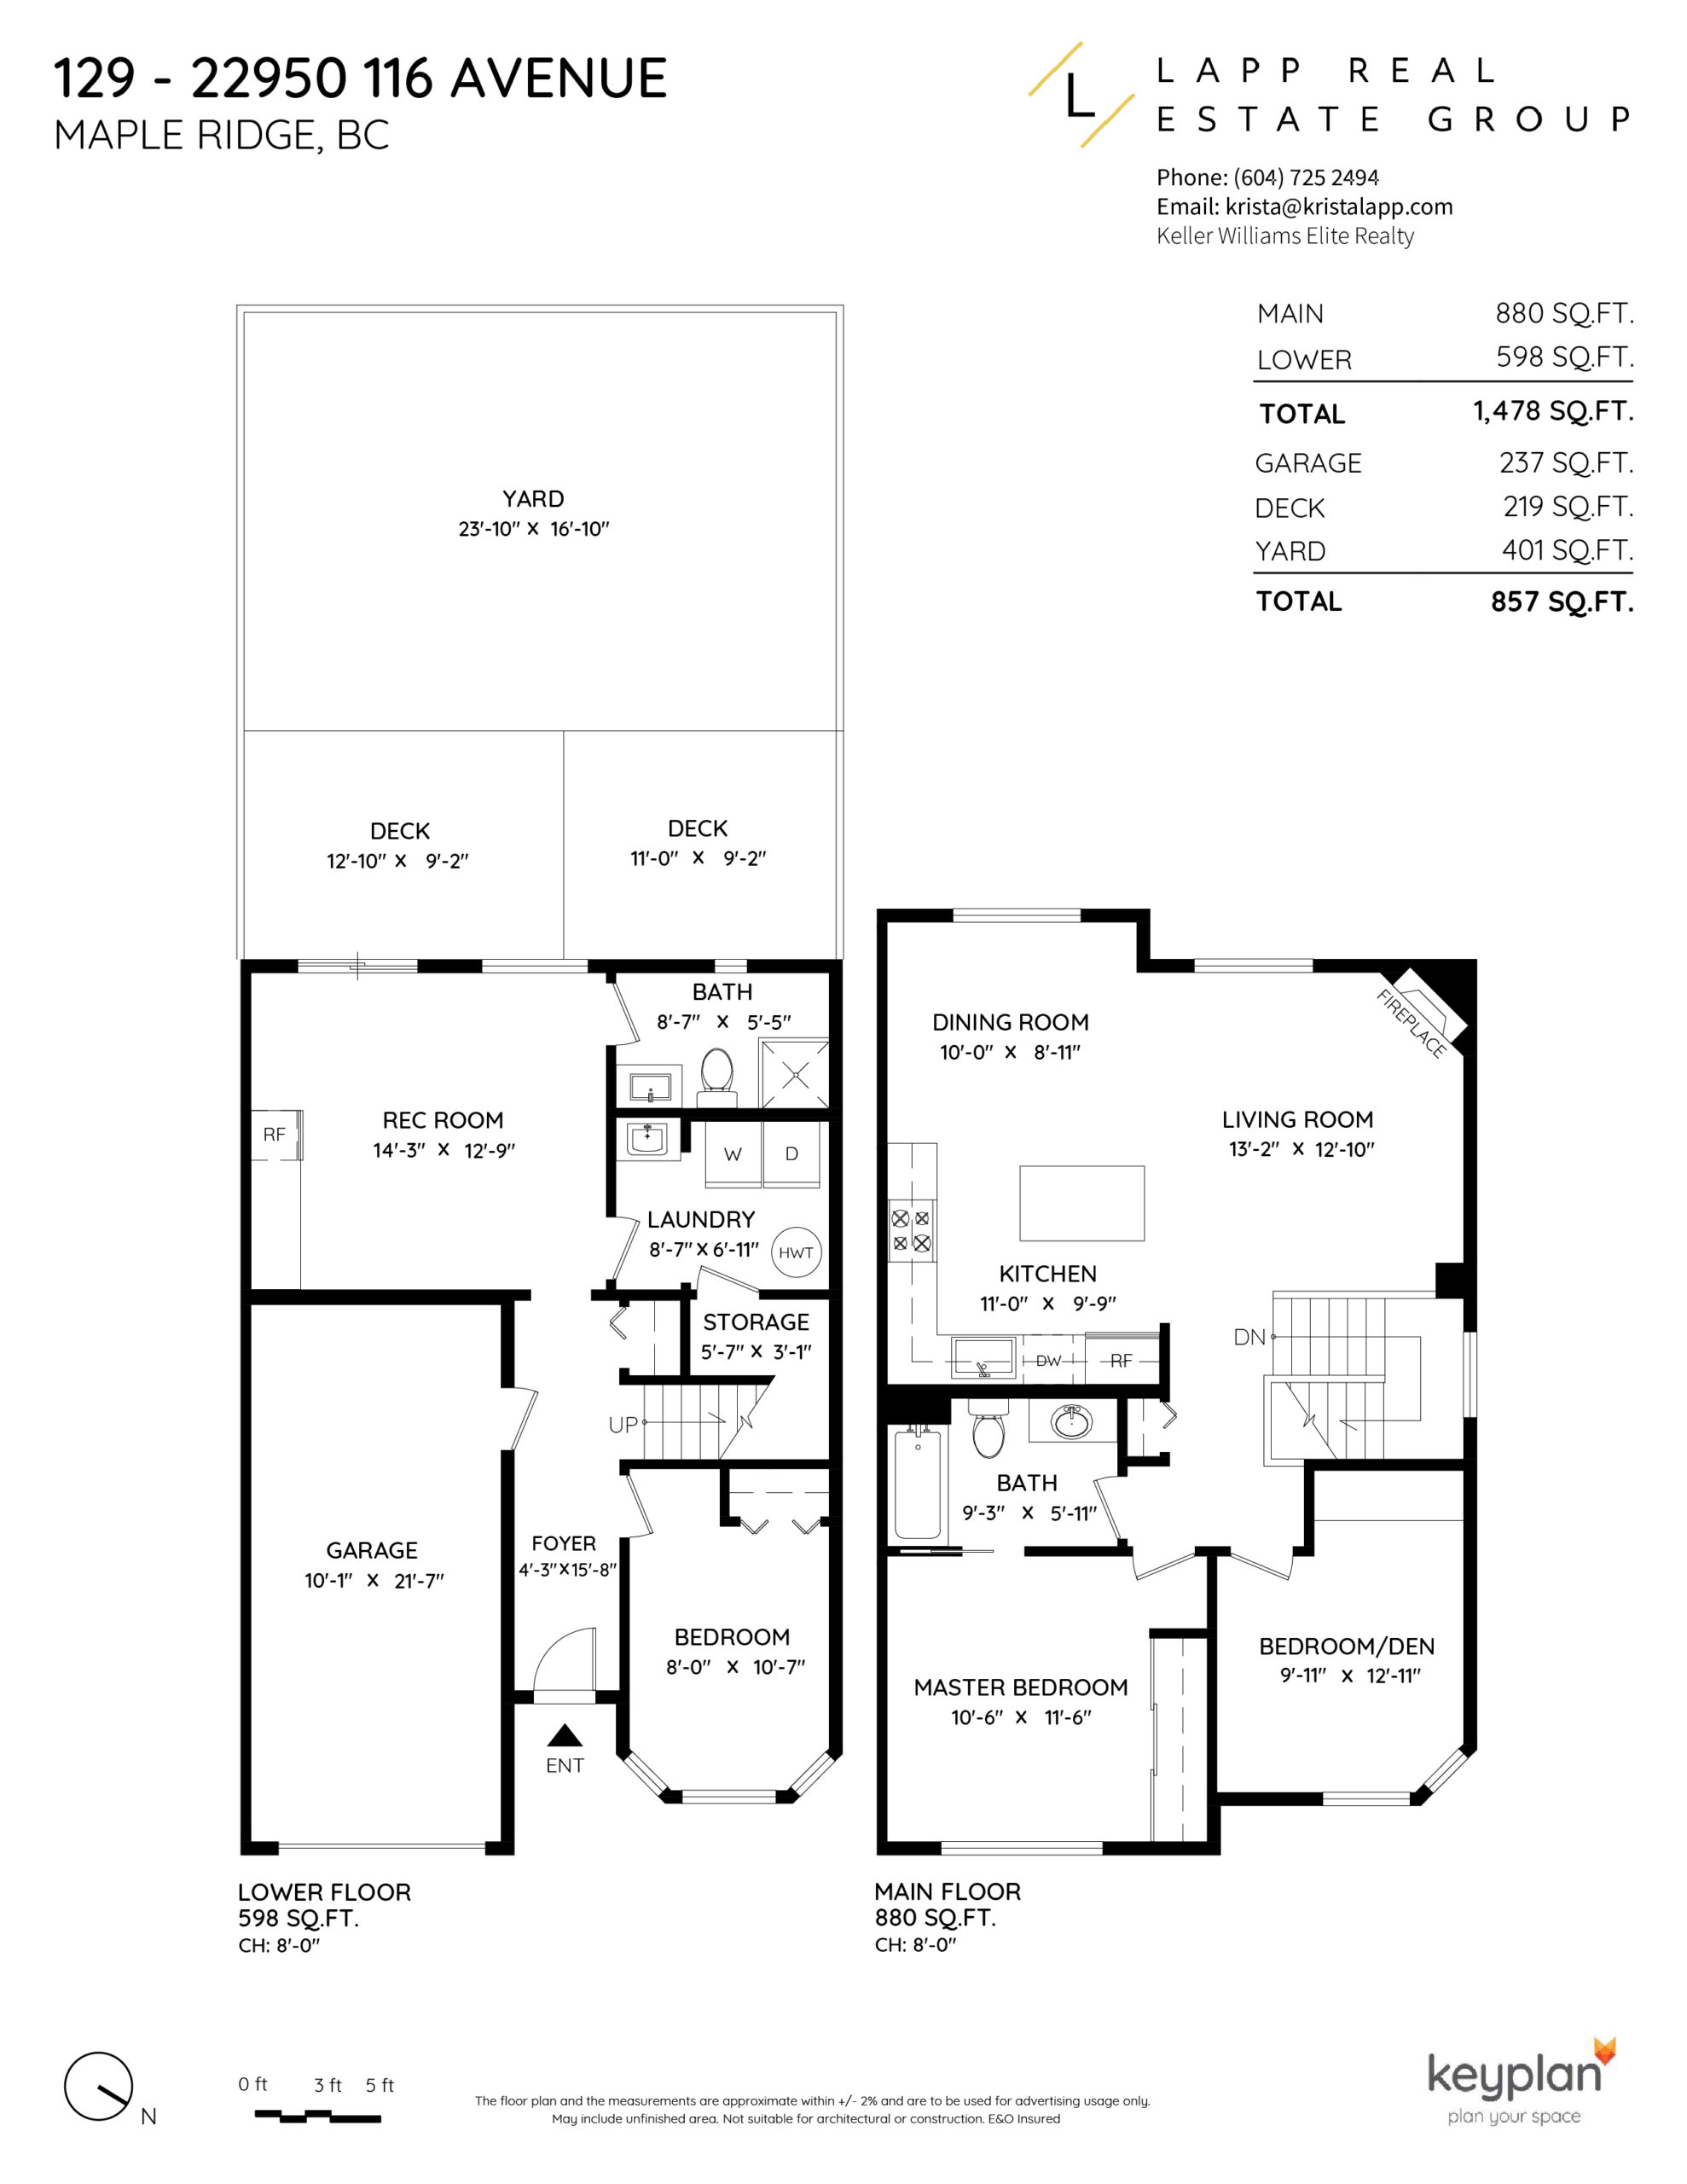 Krista Lapp Coquitlam Realtor Unit 129 22950 116 Ave Maple Ridge-Layout2-01